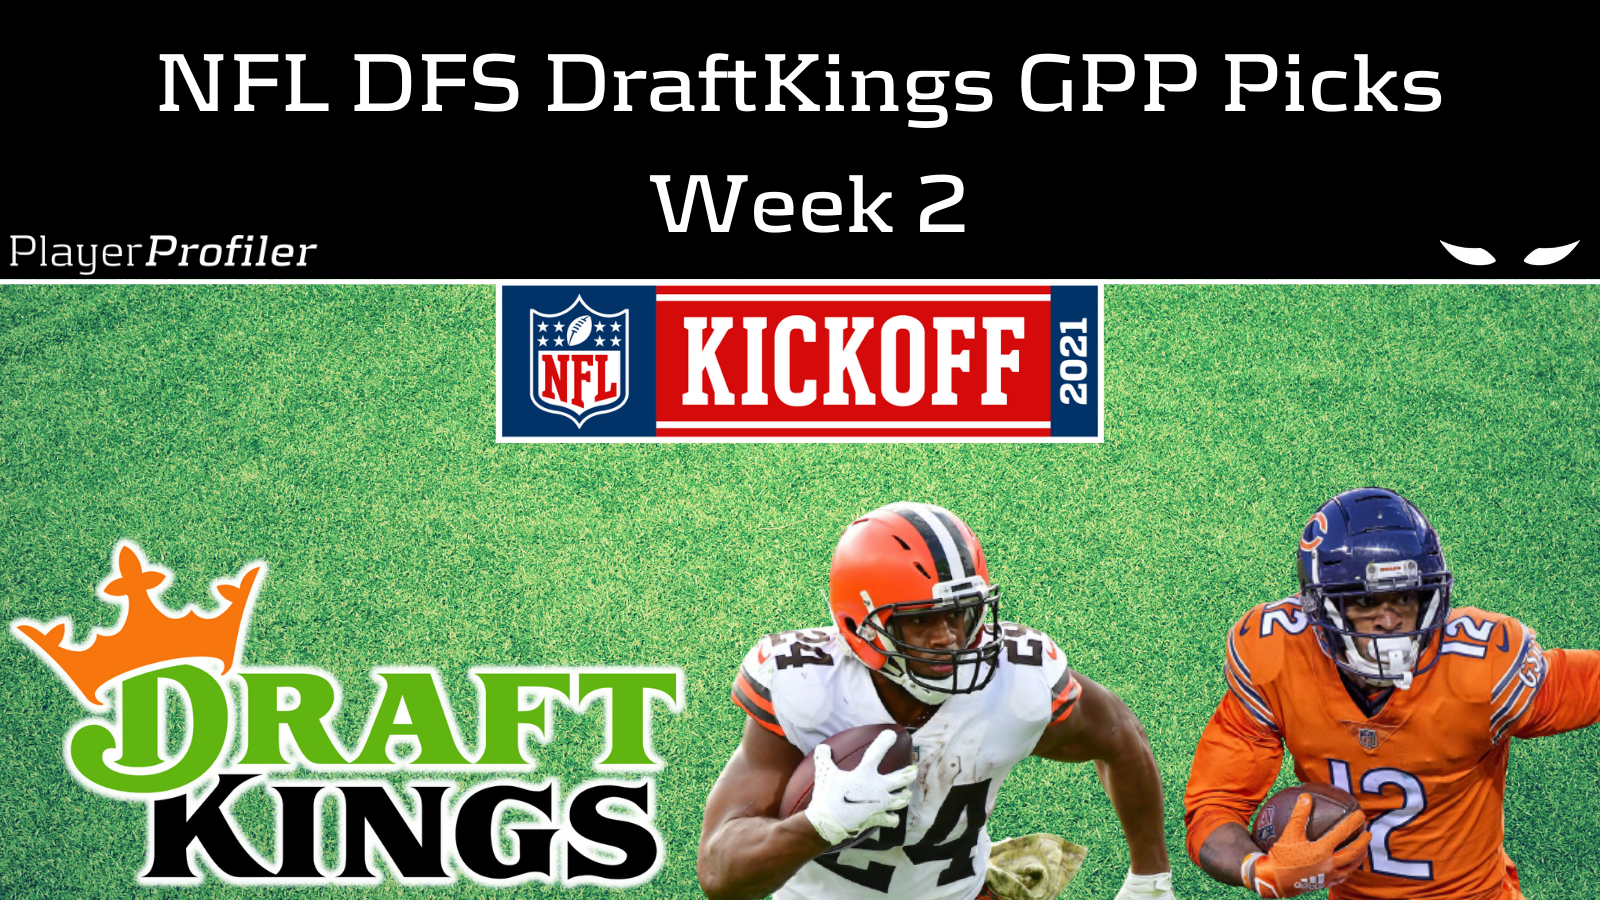 NFL DFS DraftKings GPP Picks For Week 2